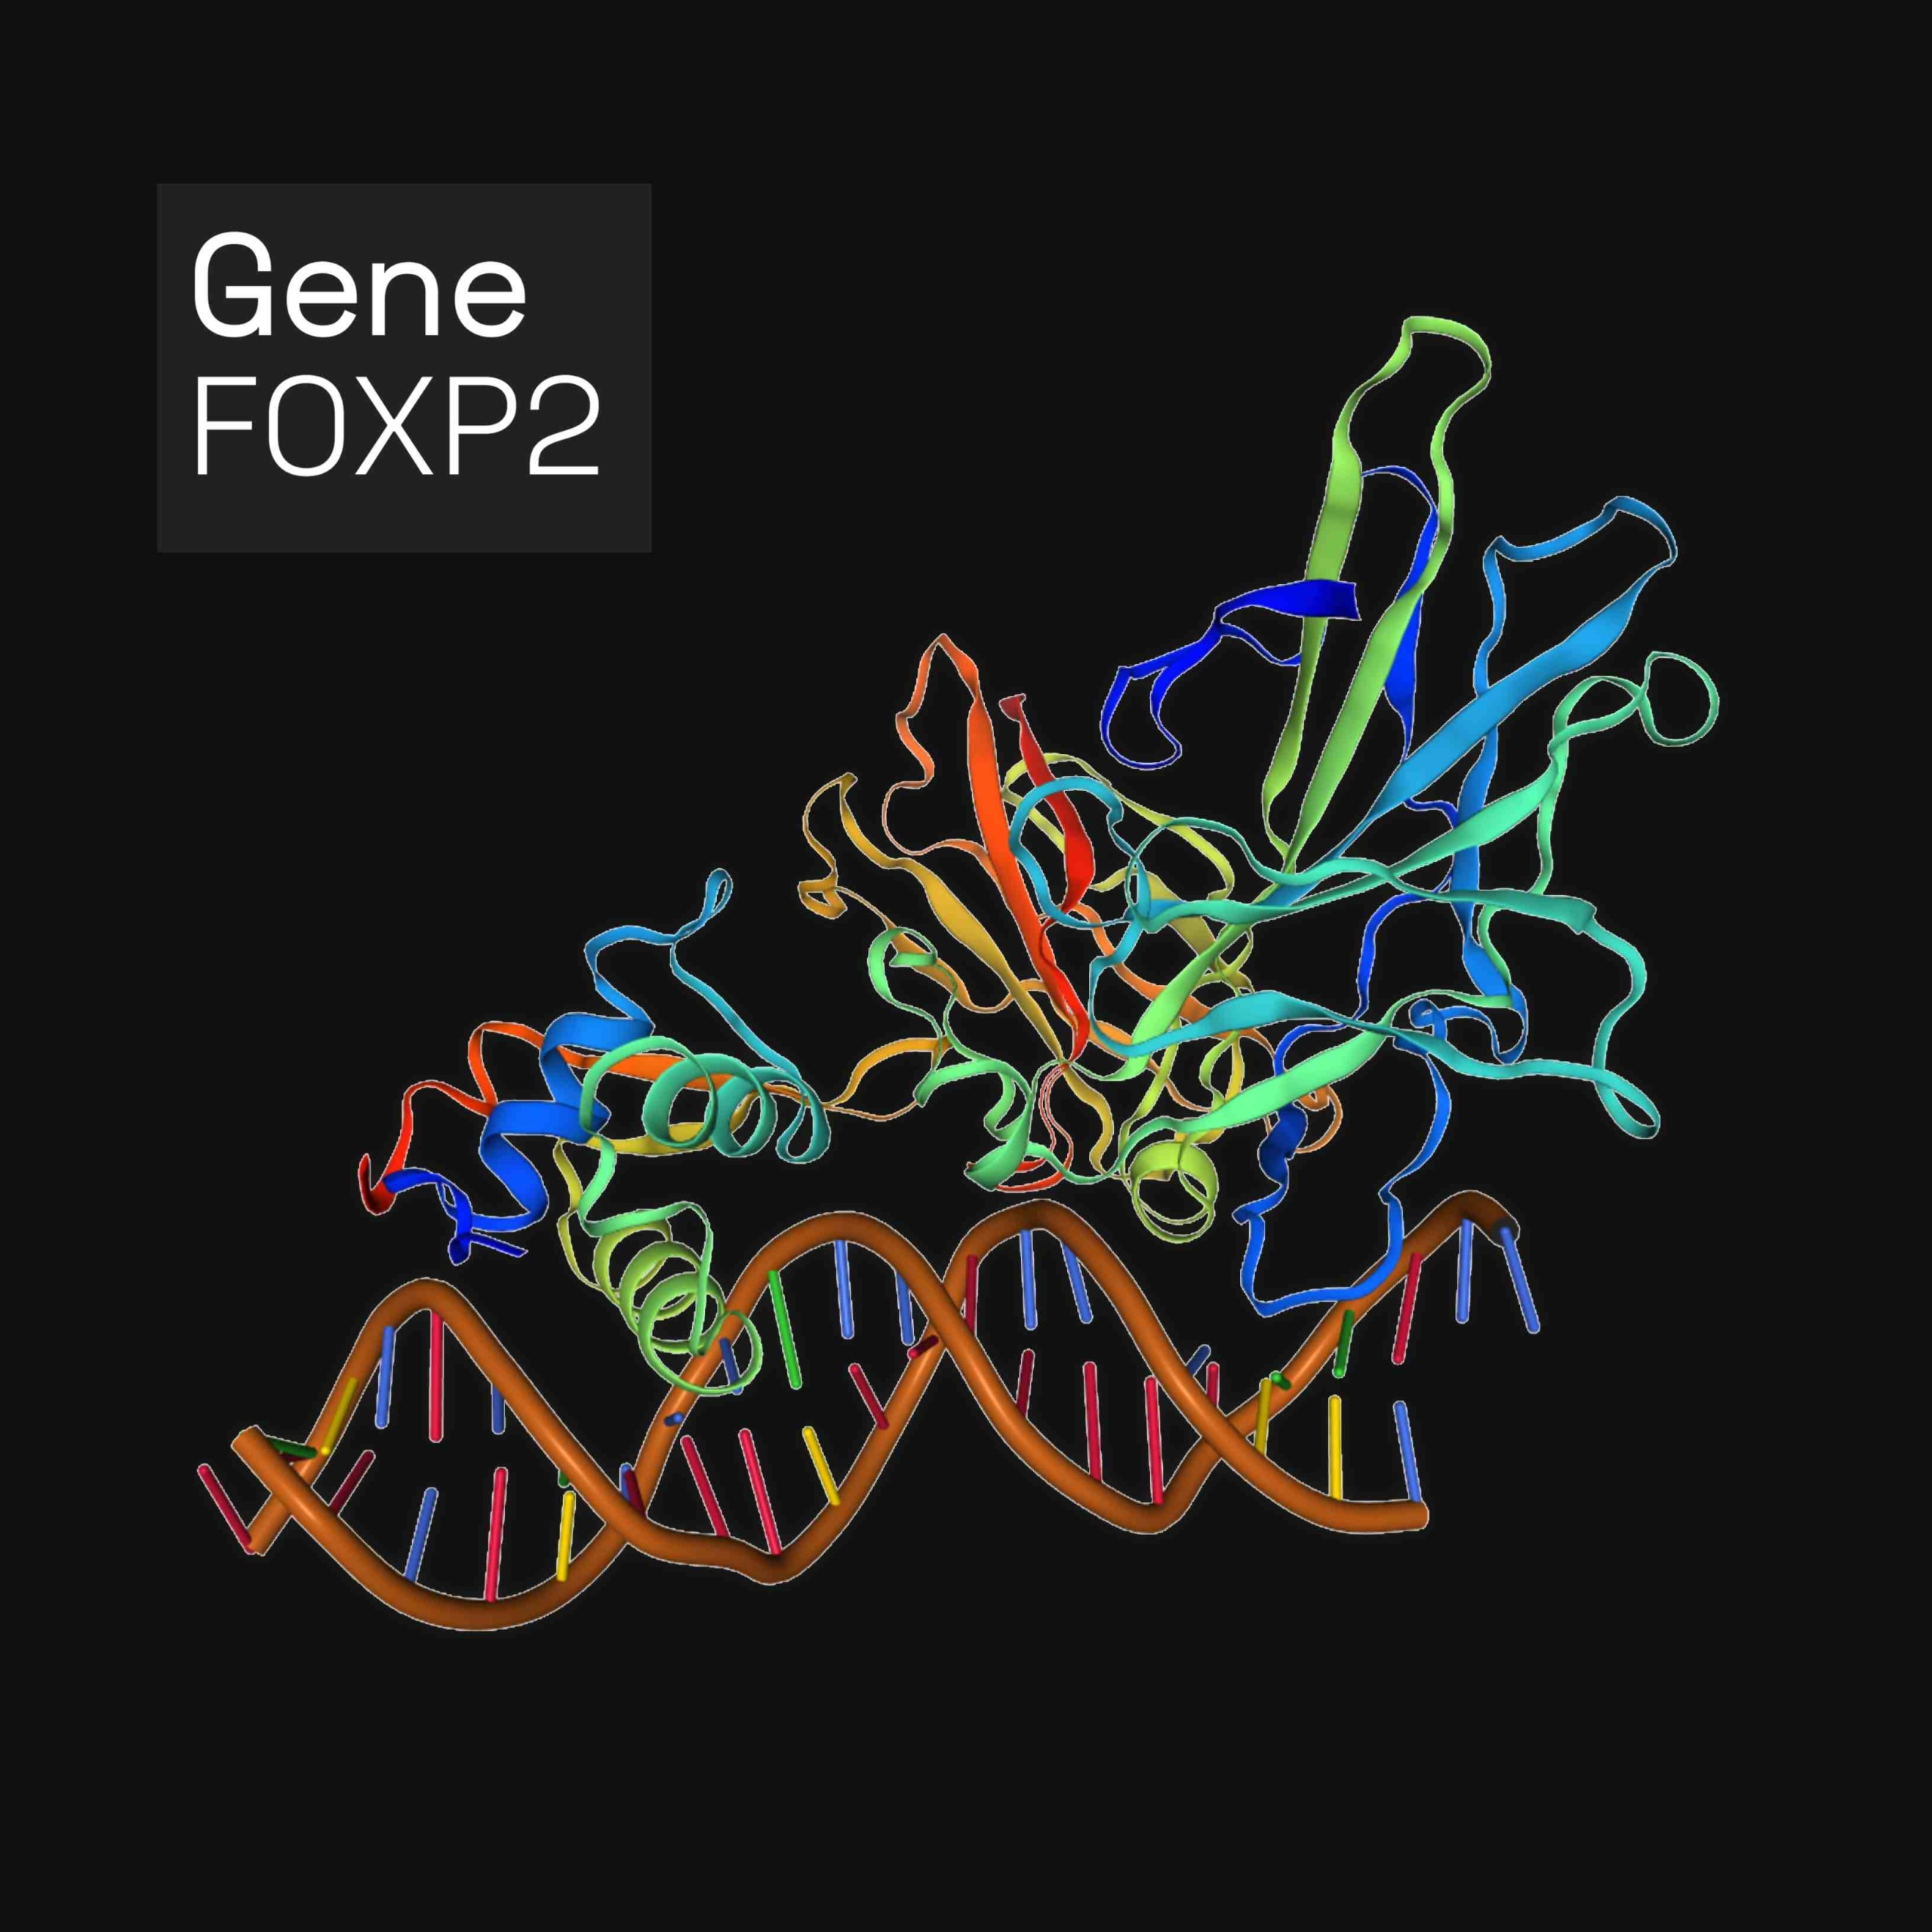 Forkhead box бялок P2 (FOXP2) - гэта бялок, які ў чалавека кадуецца генам FOXP2. FOXP2 з'яўляецца членам сямейства фактараў транскрыпцыі Forkhead Box, бялкоў, якія рэгулююць экспрэсію генаў шляхам звязвання з ДНК. Ён выяўляецца ў галаўным мозгу, сэрцы, лёгкіх і стрававальнай сістэме.